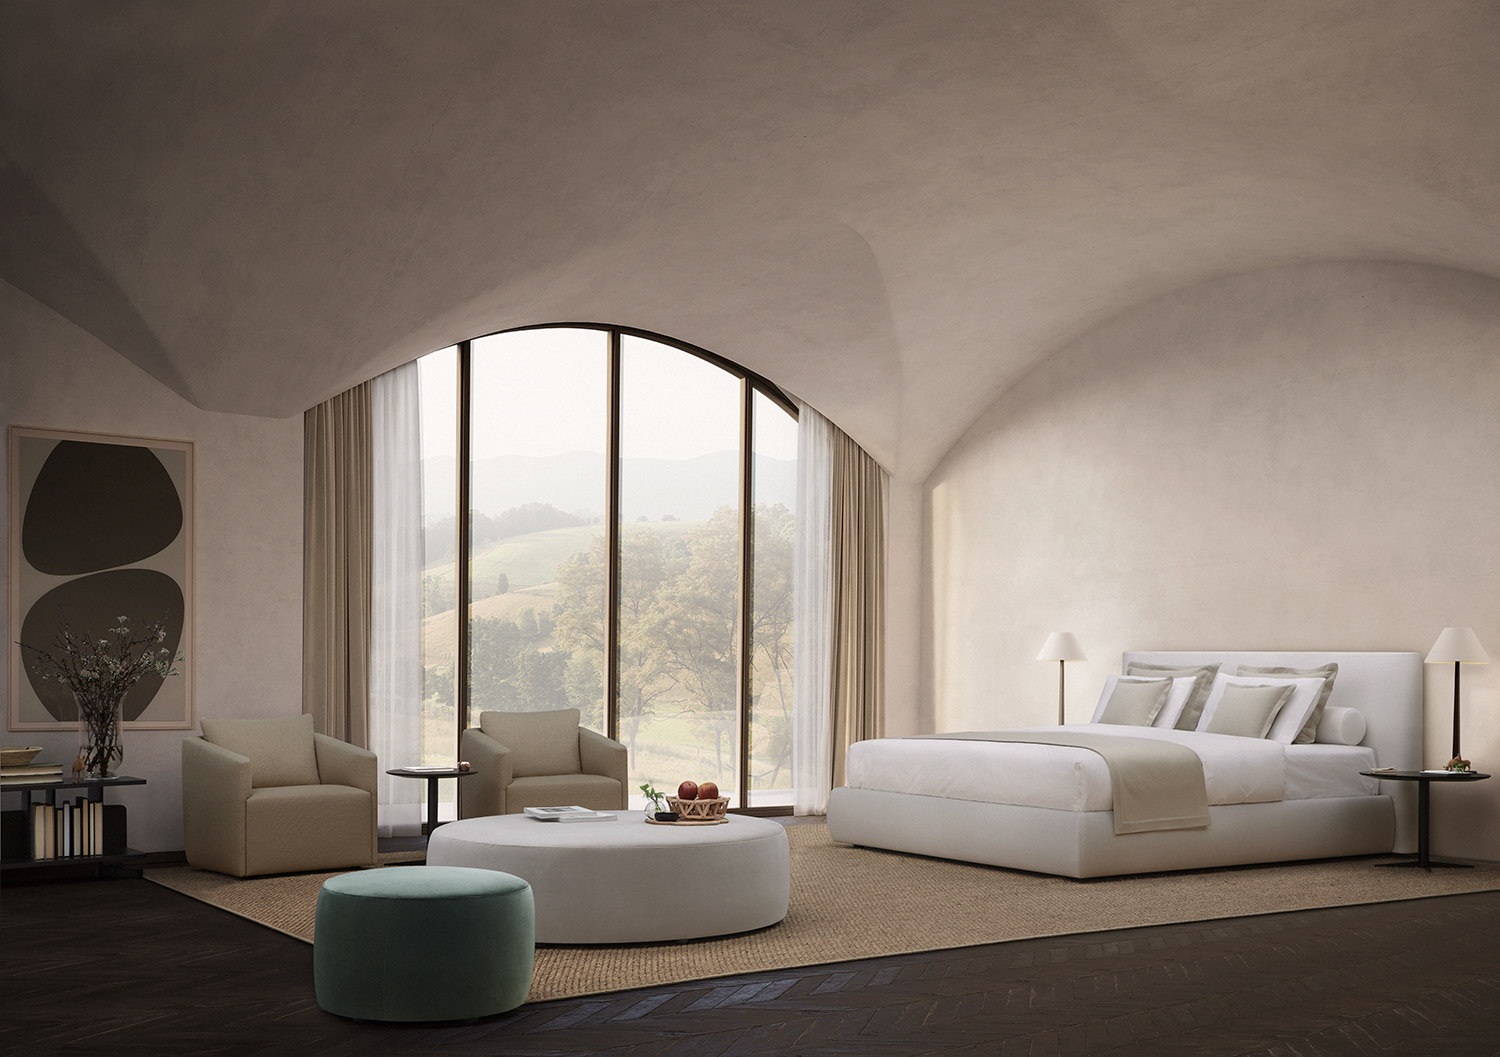 Venice bedroom collection by Mario Ruiz for Joquer